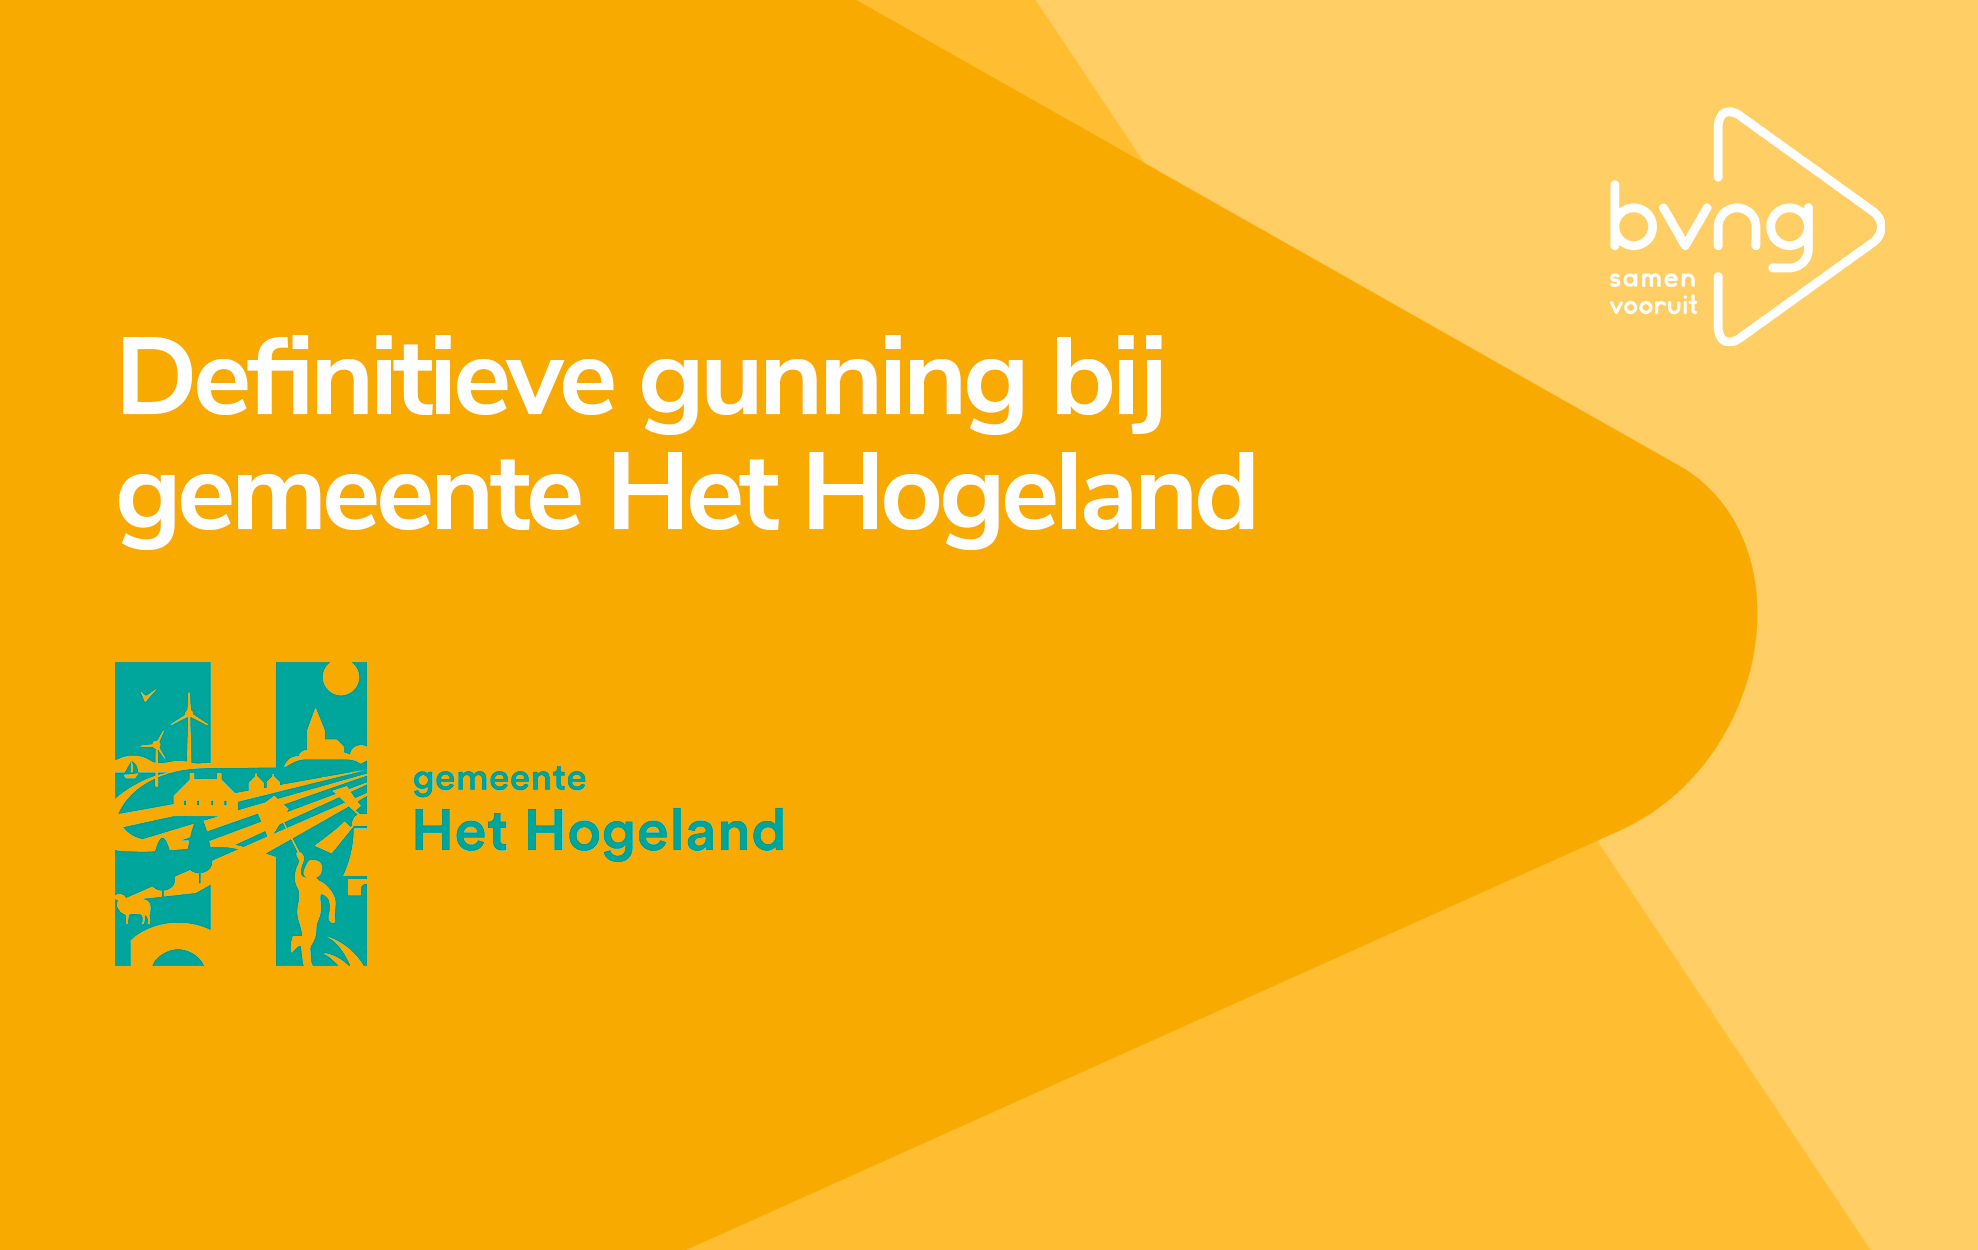 De gemeente Het Hogeland en BVNG; samen vooruit!